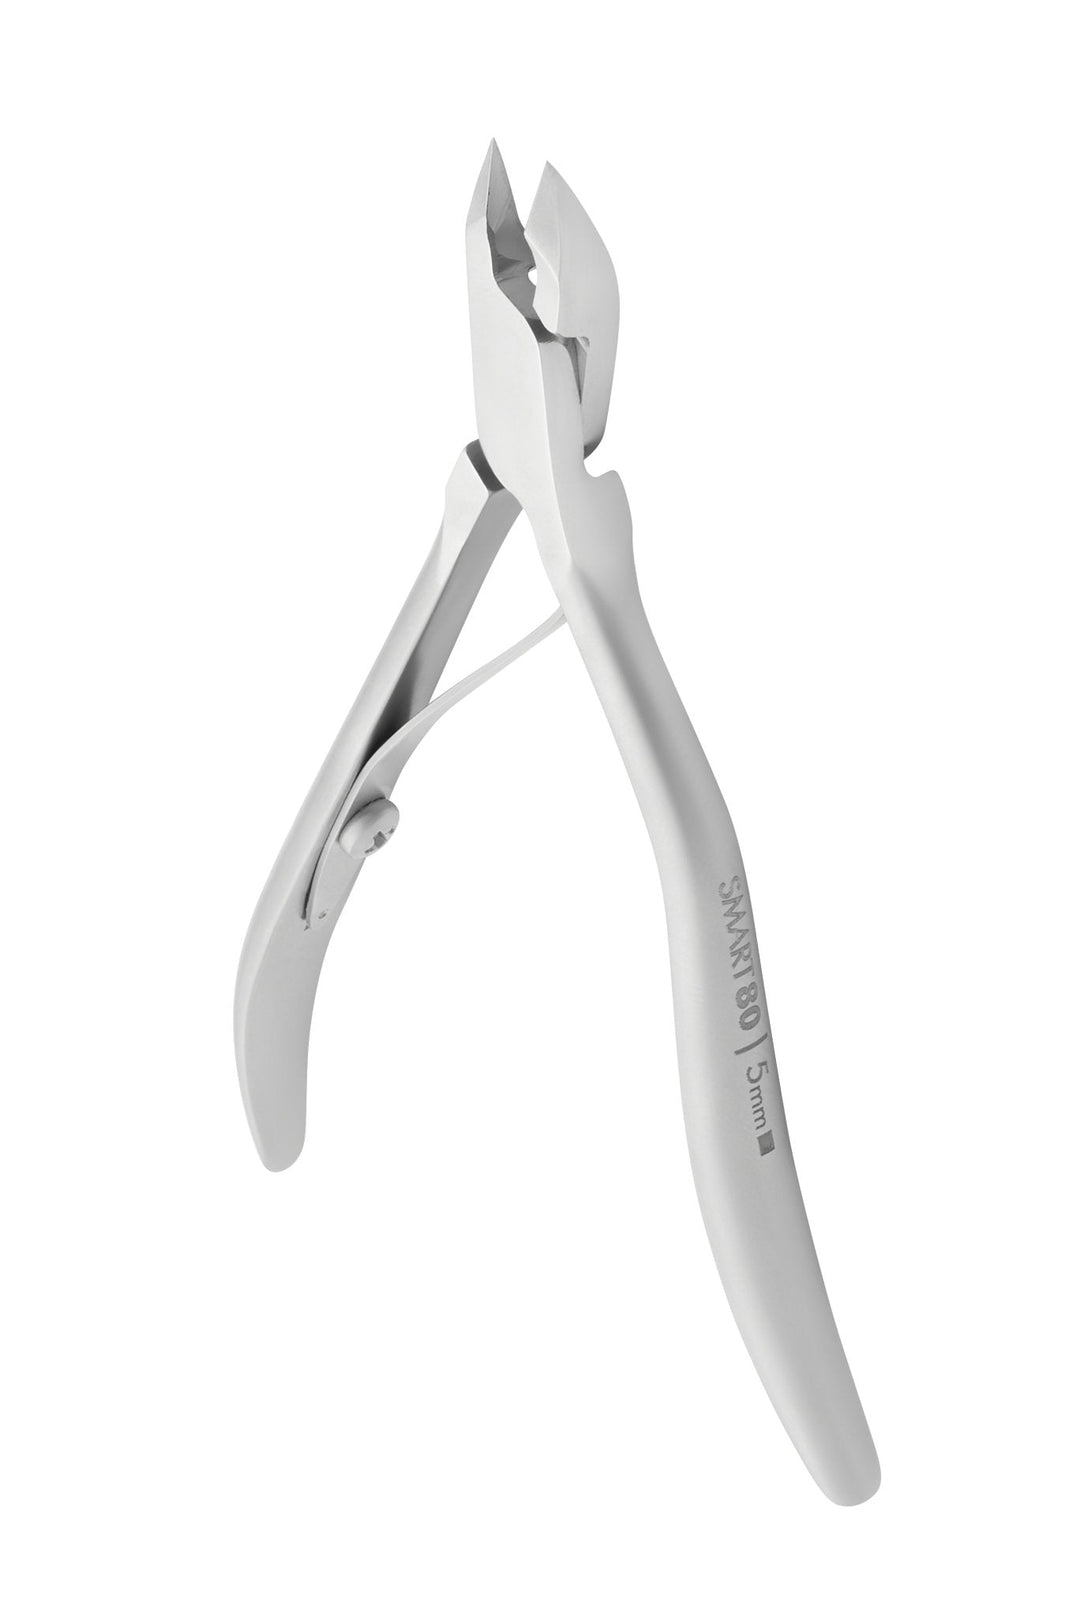 Staleks Cuticle Nipper Smart 80 — 5 mm Jaw | U-tools